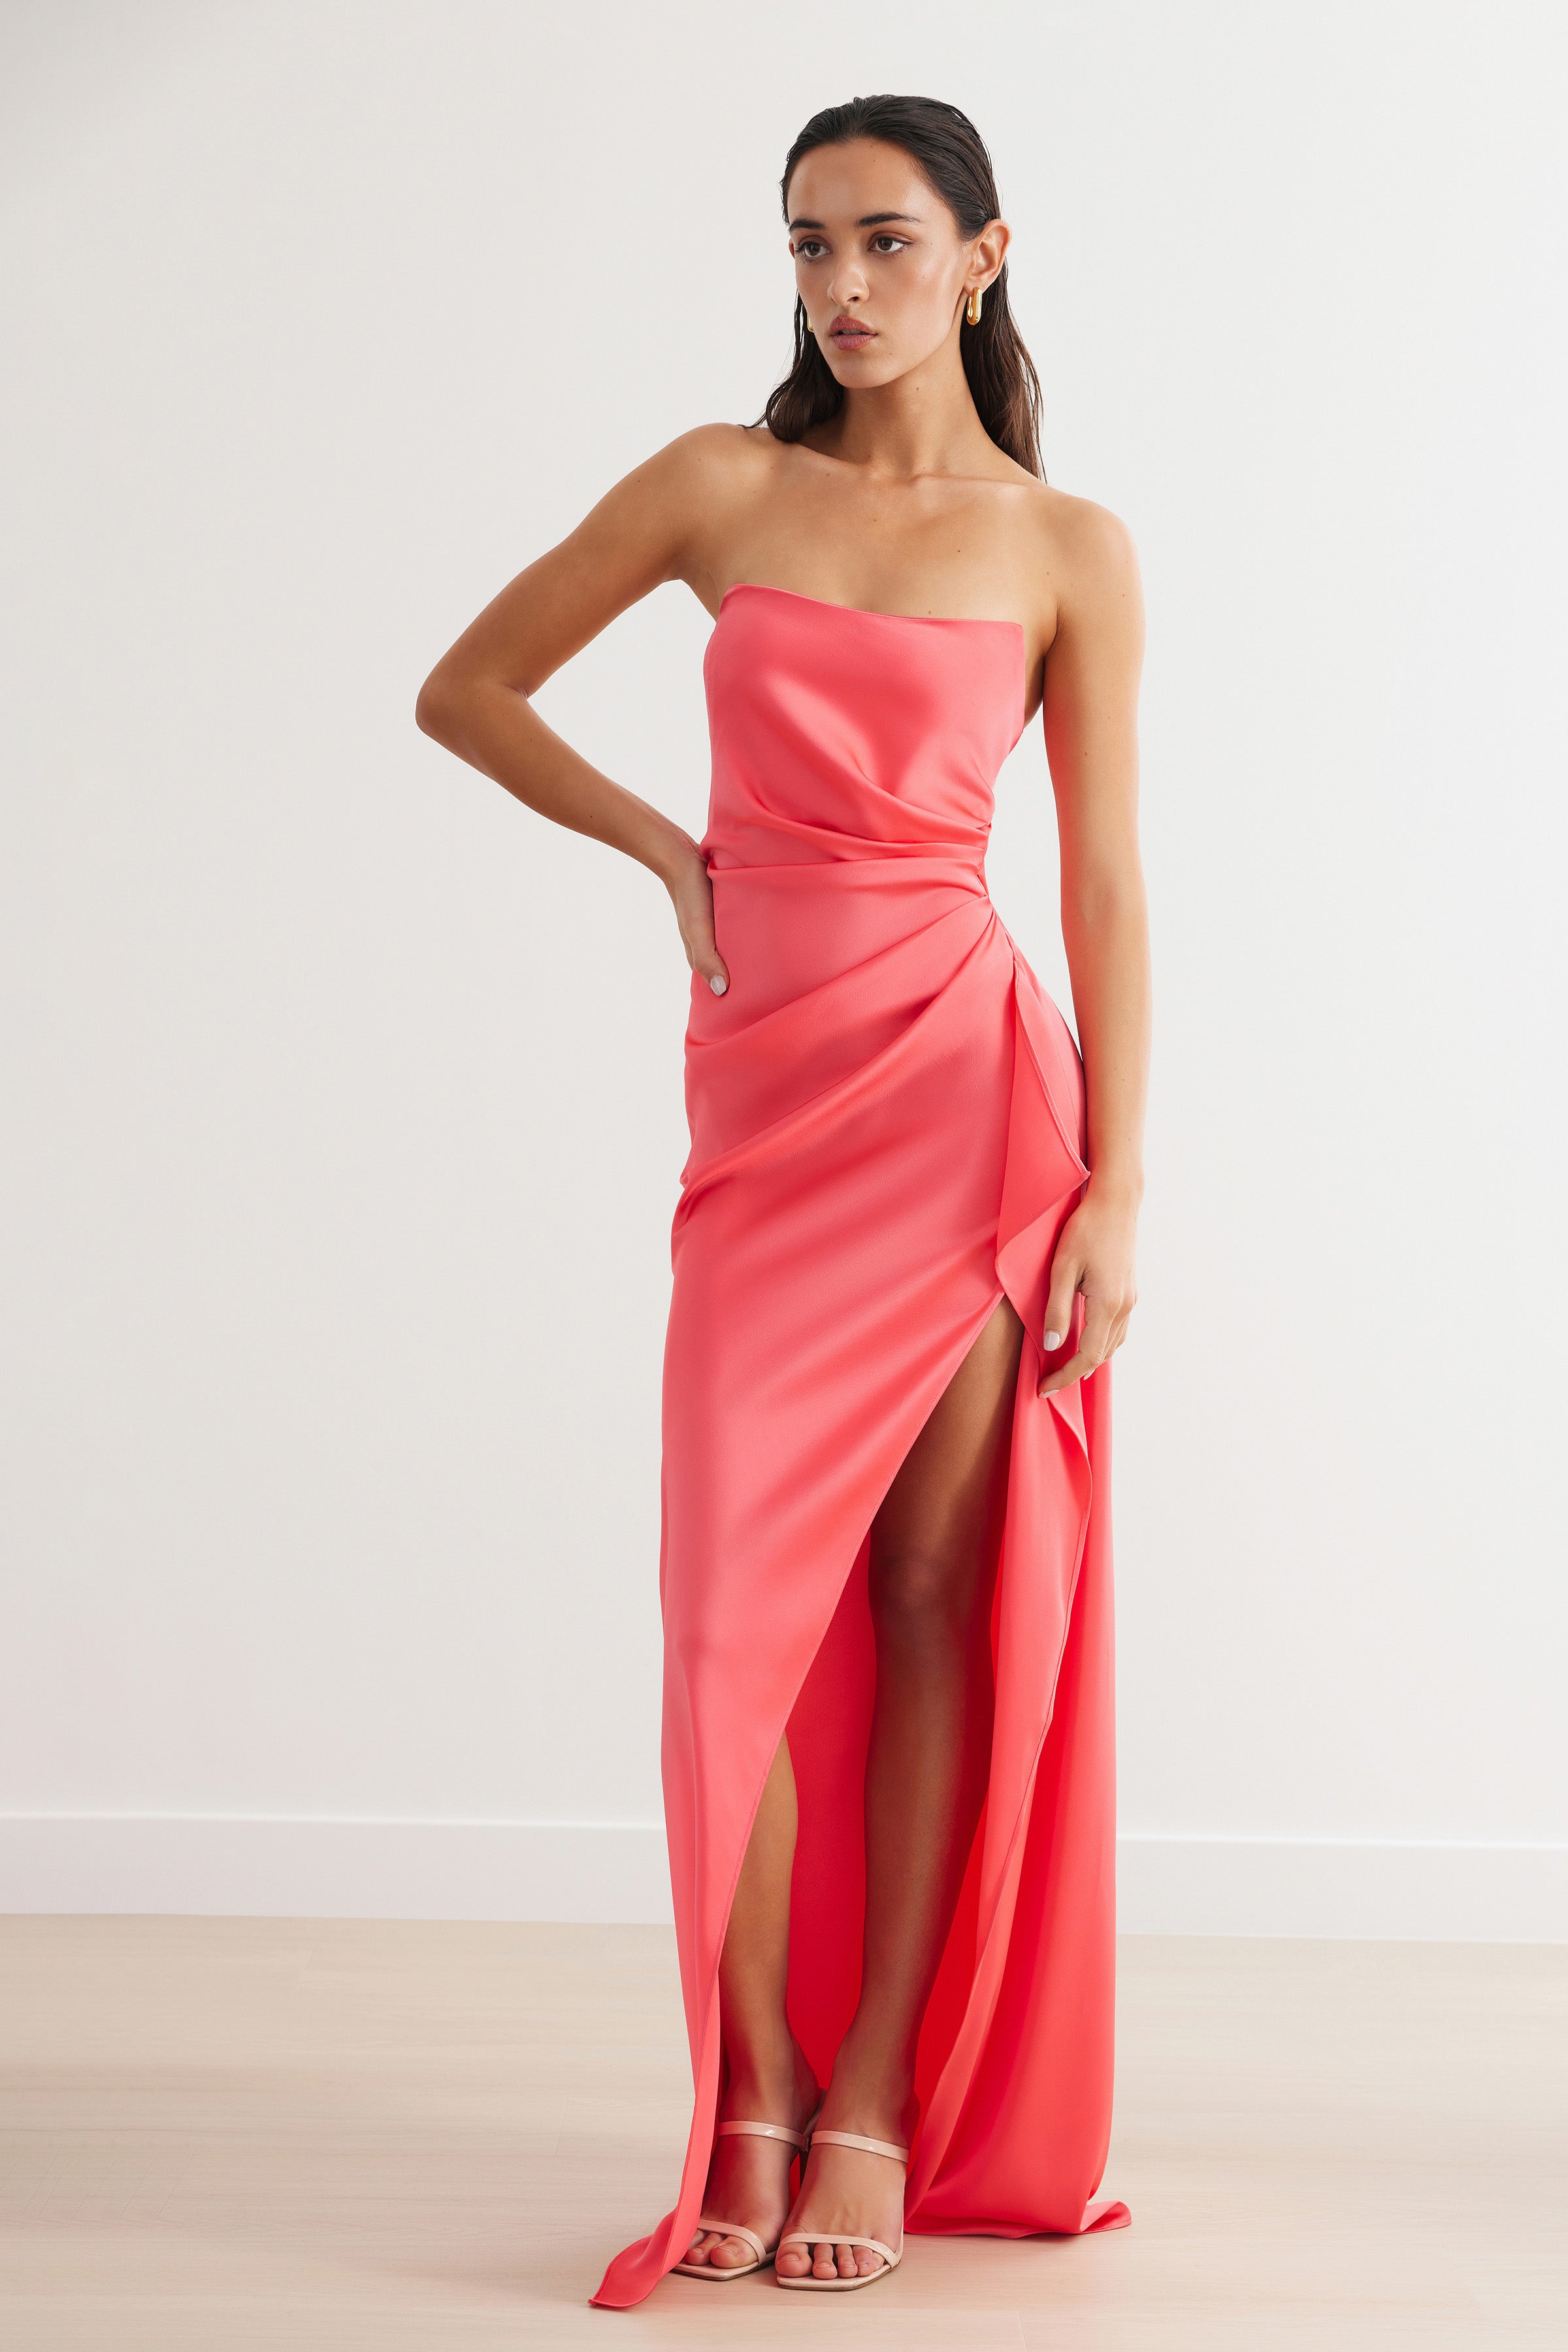 Alzira Dress - Flamingo